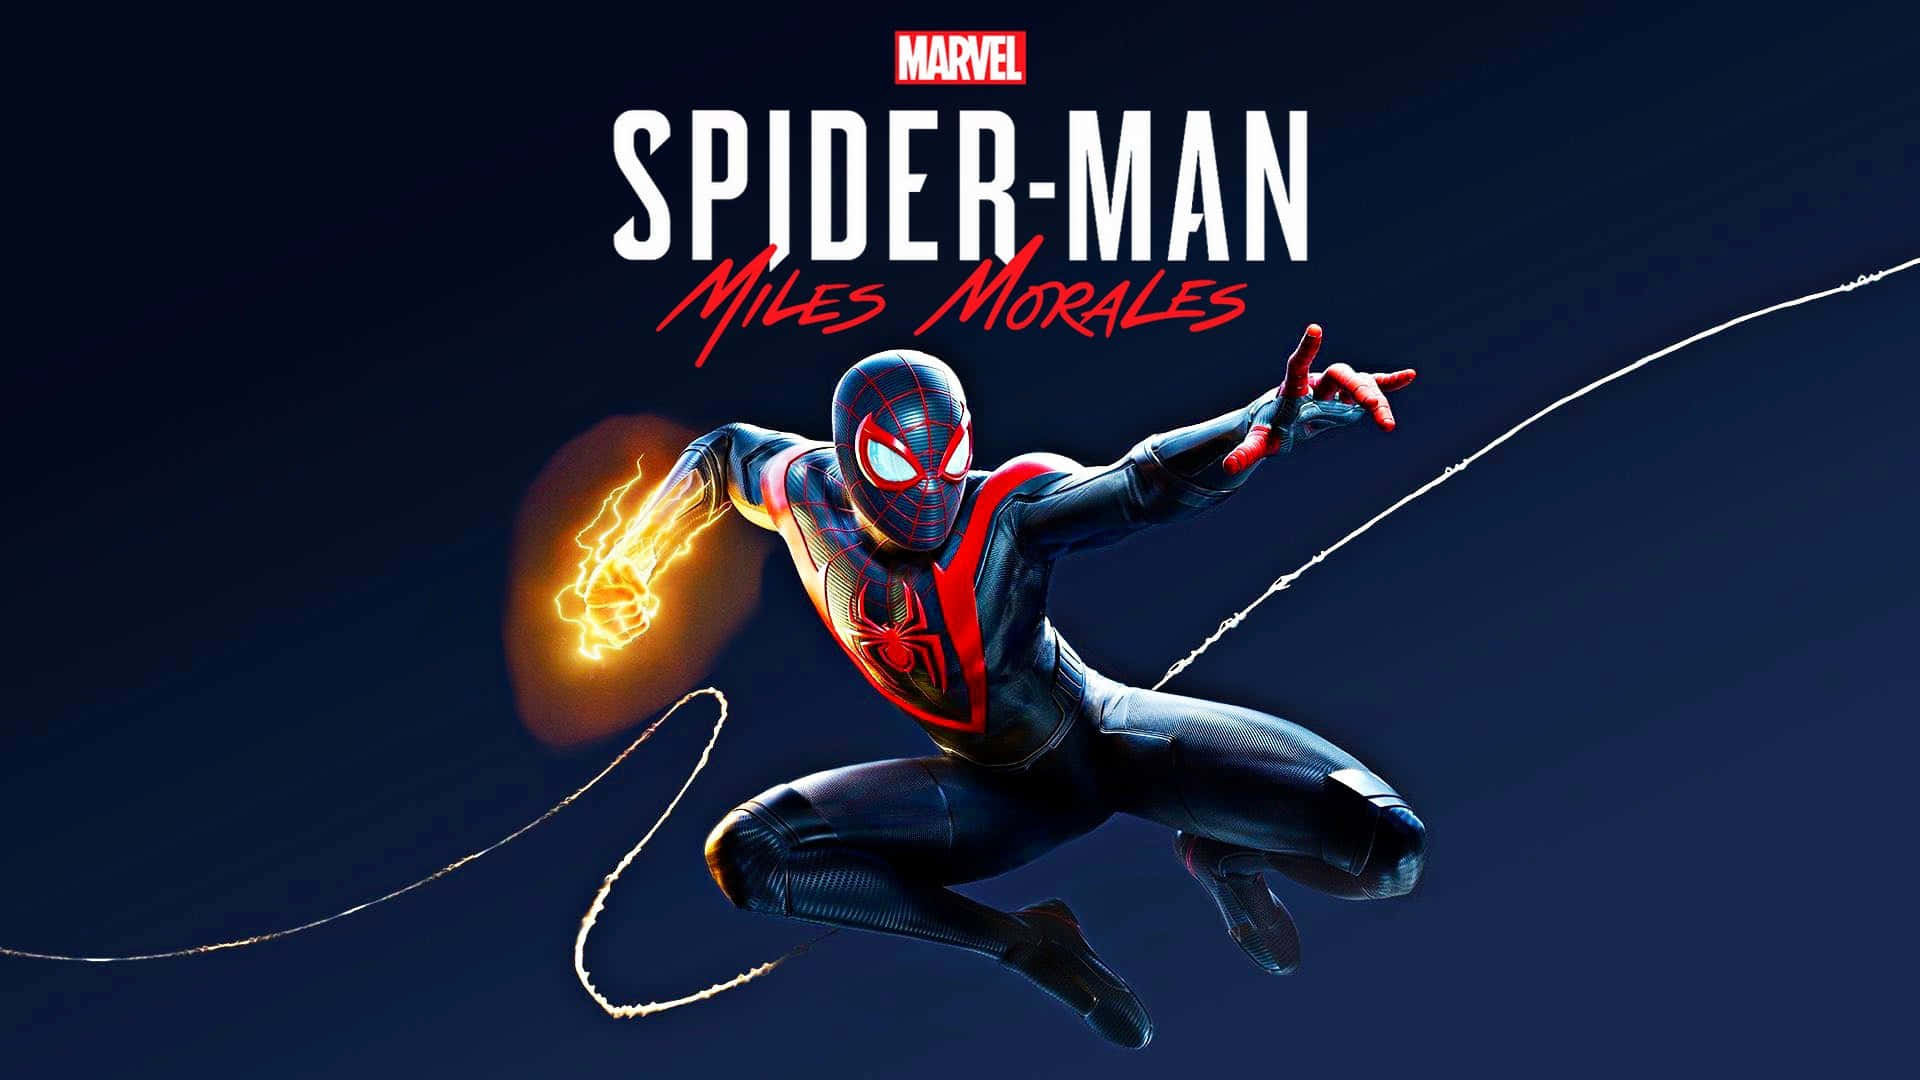 Milesmorales, Der Freundliche Spider-man